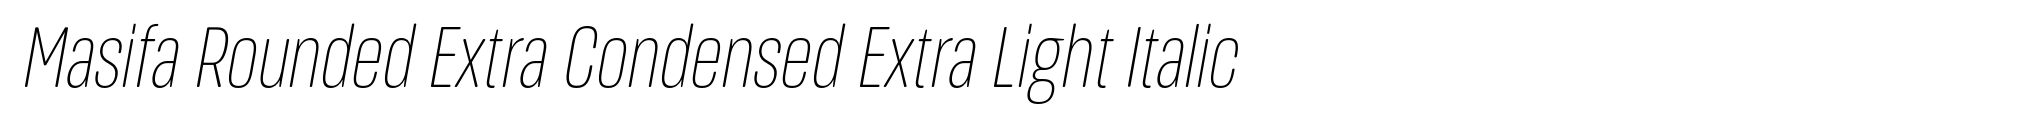 Masifa Rounded Extra Condensed Extra Light Italic image